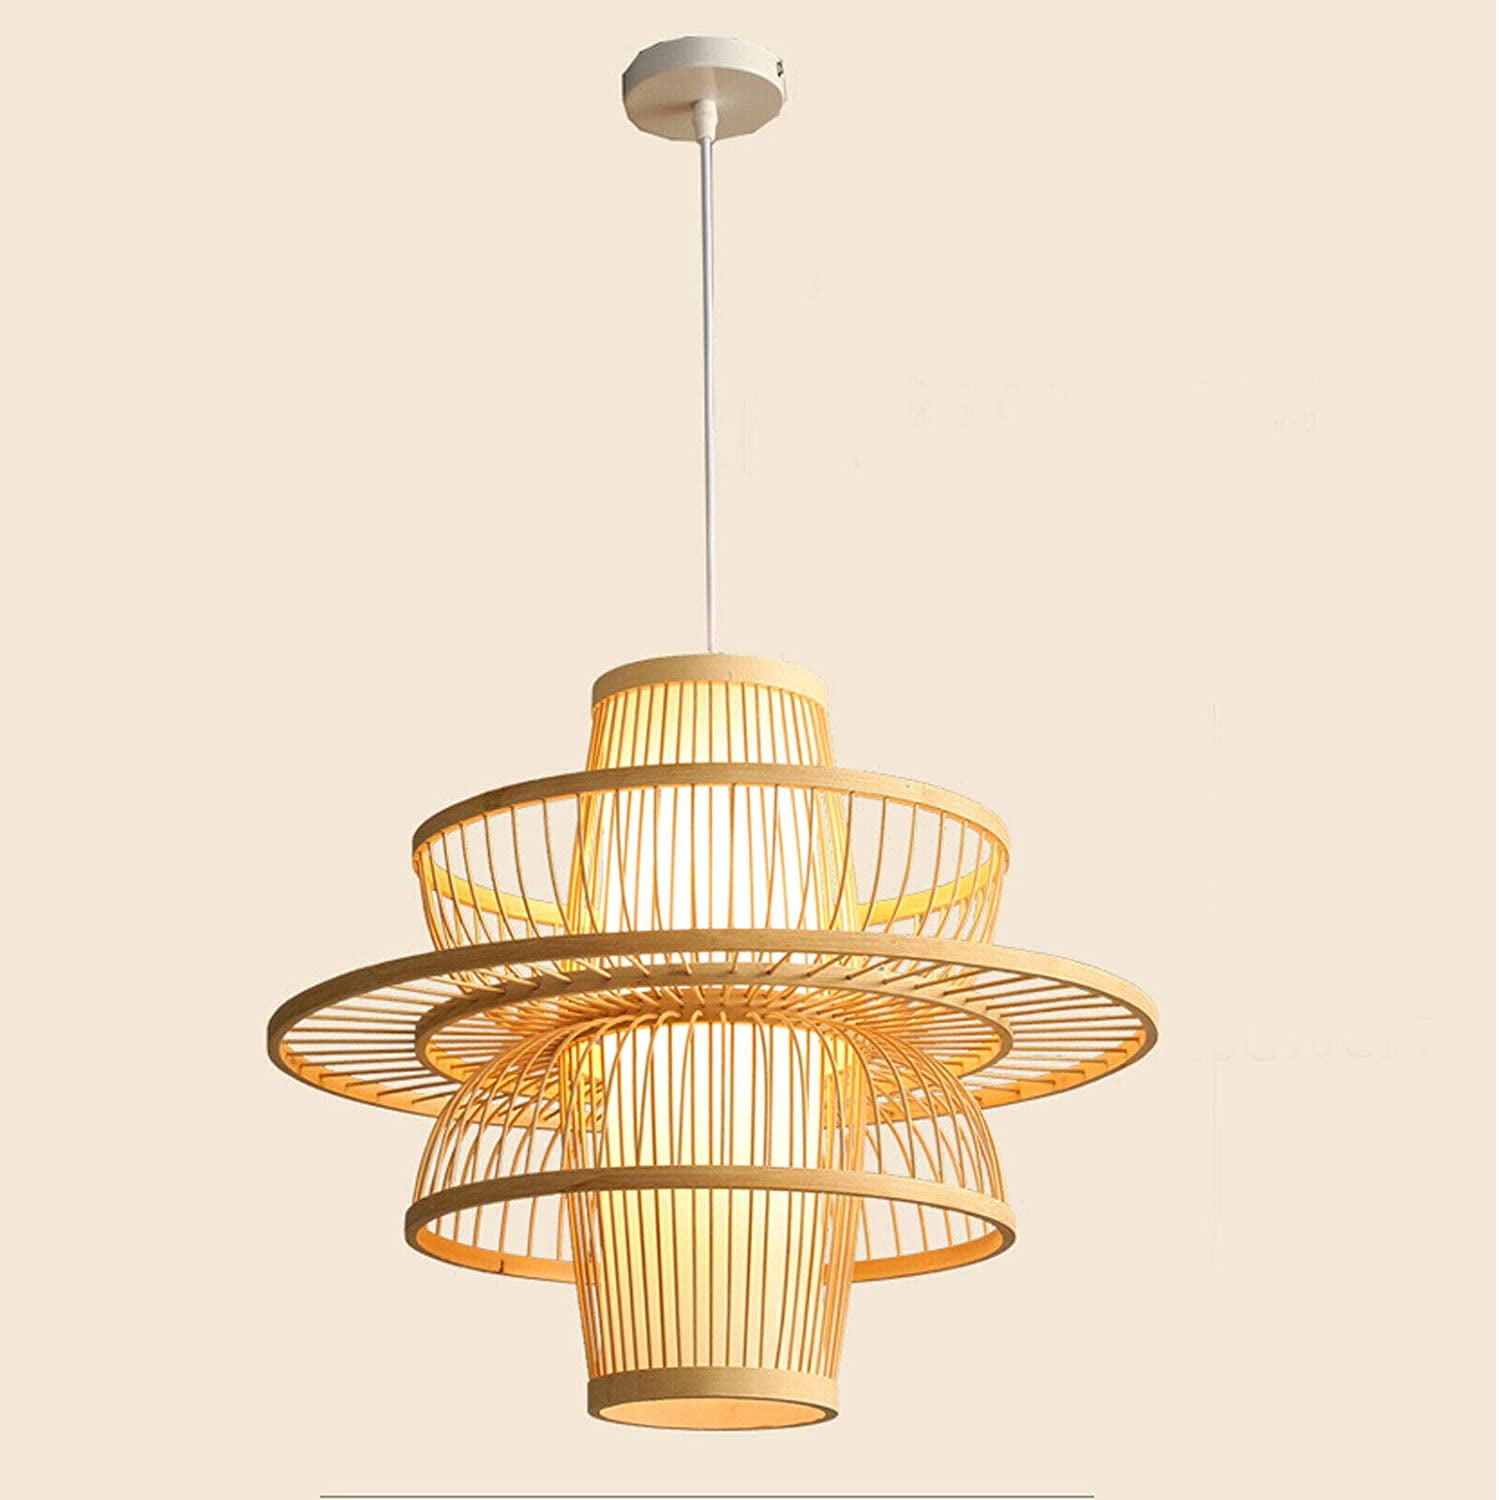 Modern Retro Vintage Ceiling Lamp Chandelier Lighting Fixture Pendant Light Bulb 